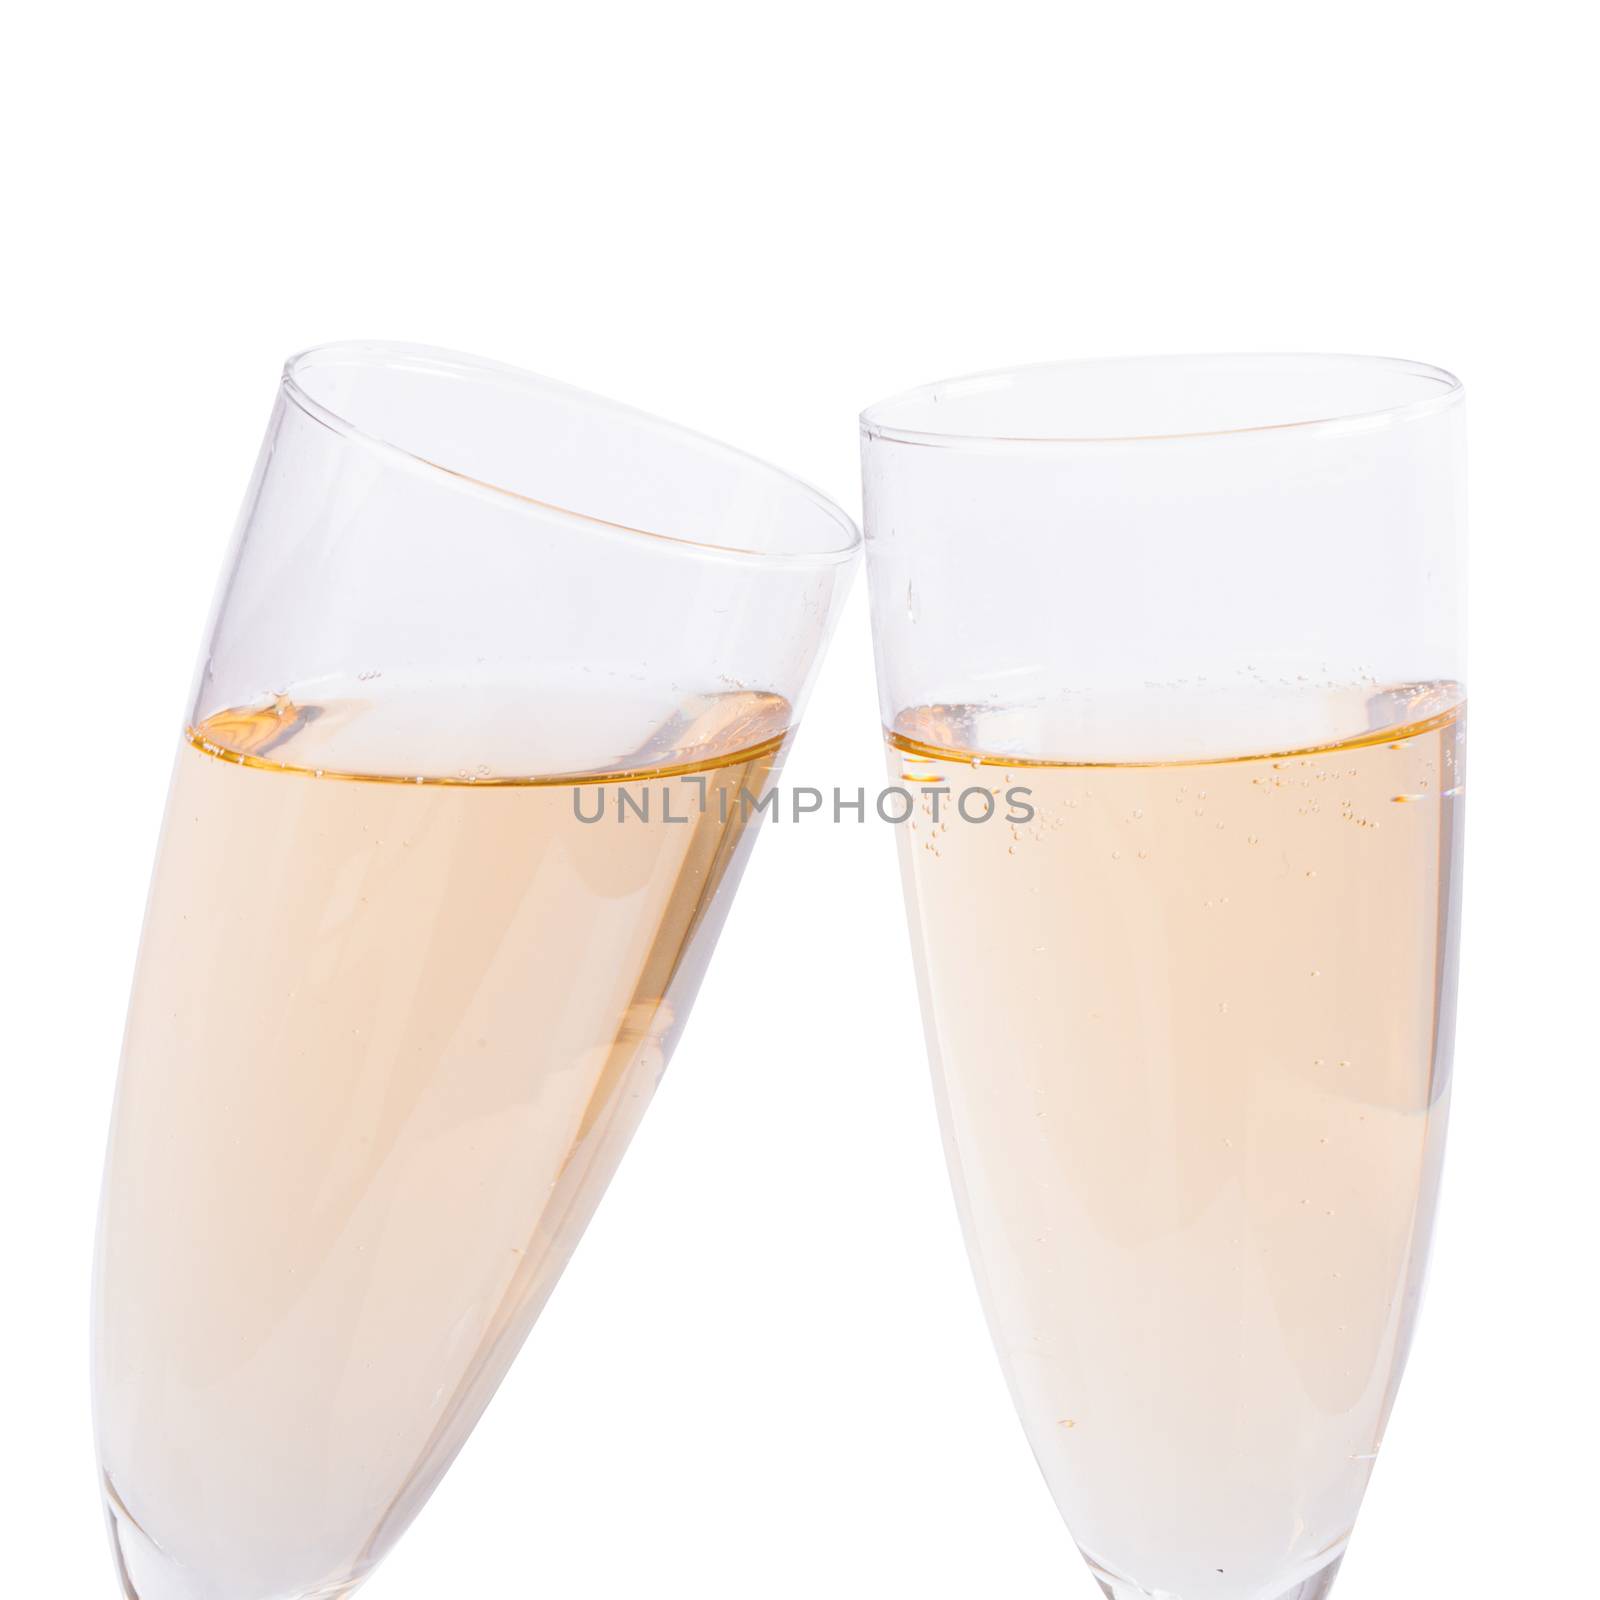 Glass of champagne by rufatjumali